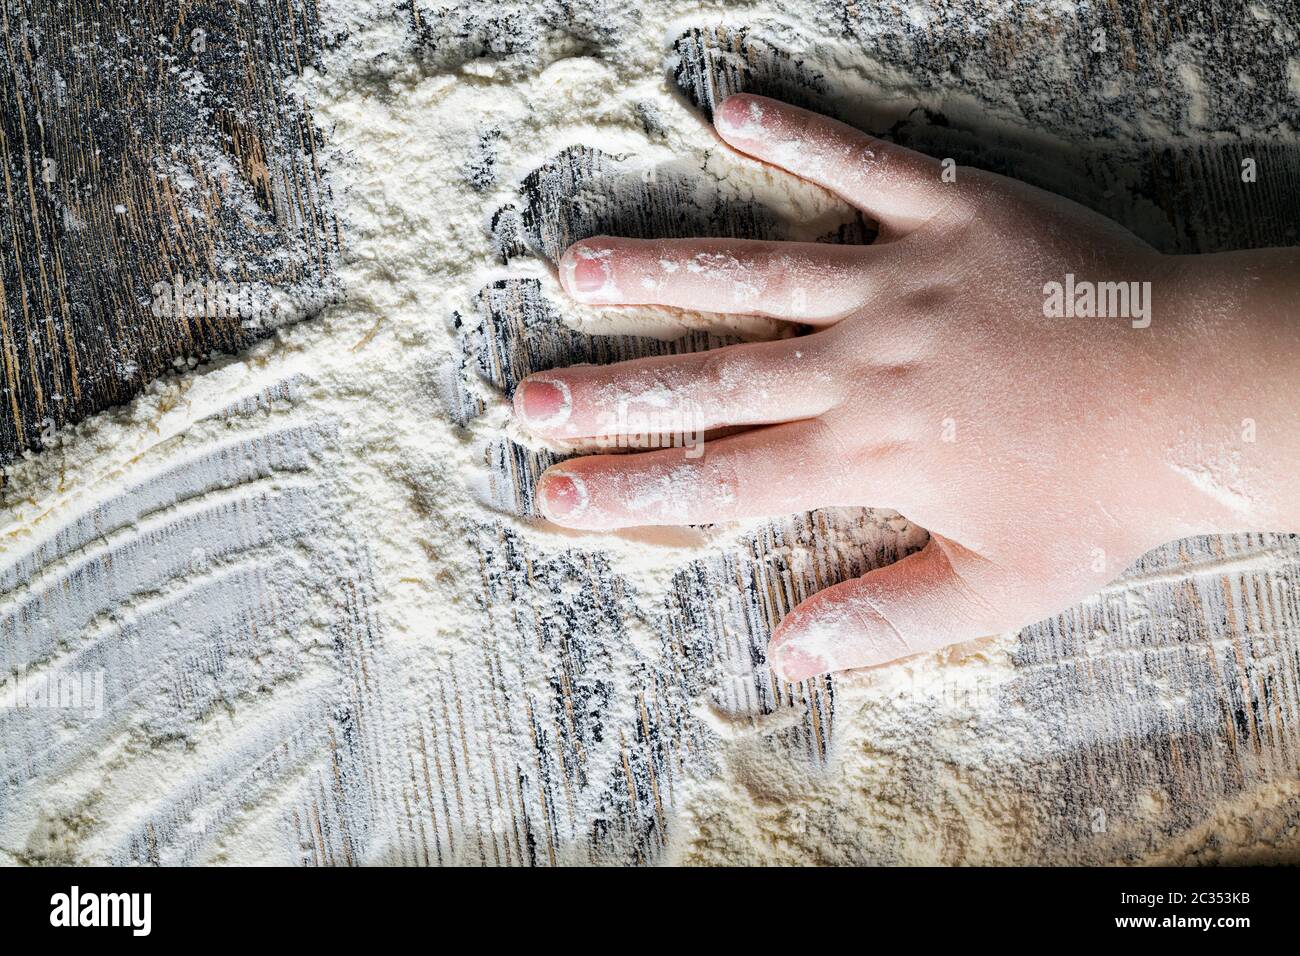 traces de la main de l'enfant sur une grande quantité de farine après avoir fait cuire de véritables pâtes de blé, empreintes digitales et palmiers Banque D'Images